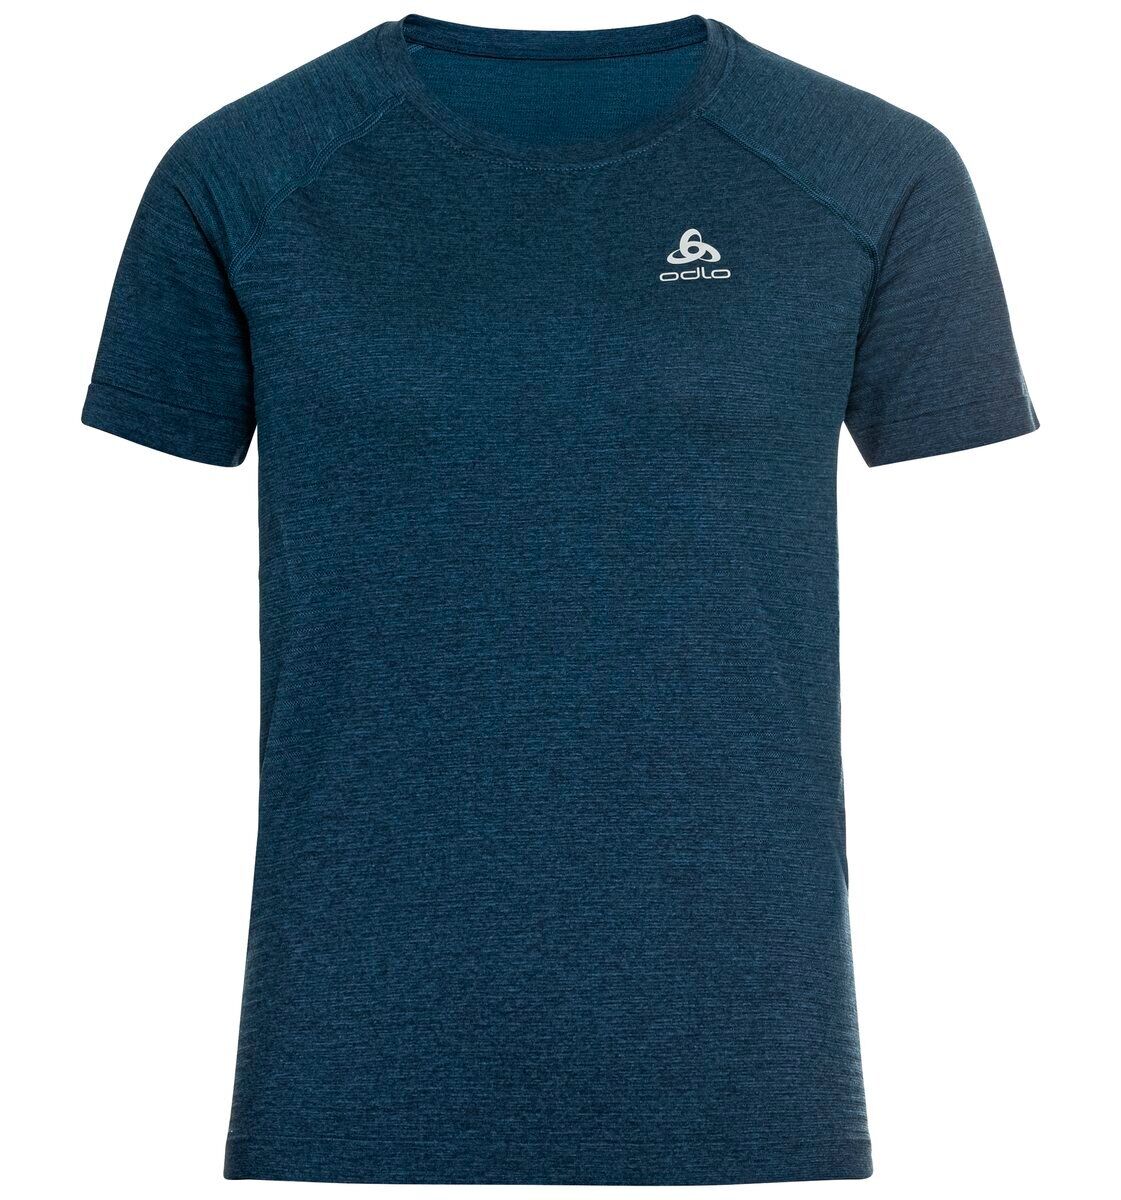 Odlo Essential Seamless - Running T-shirt - Women's